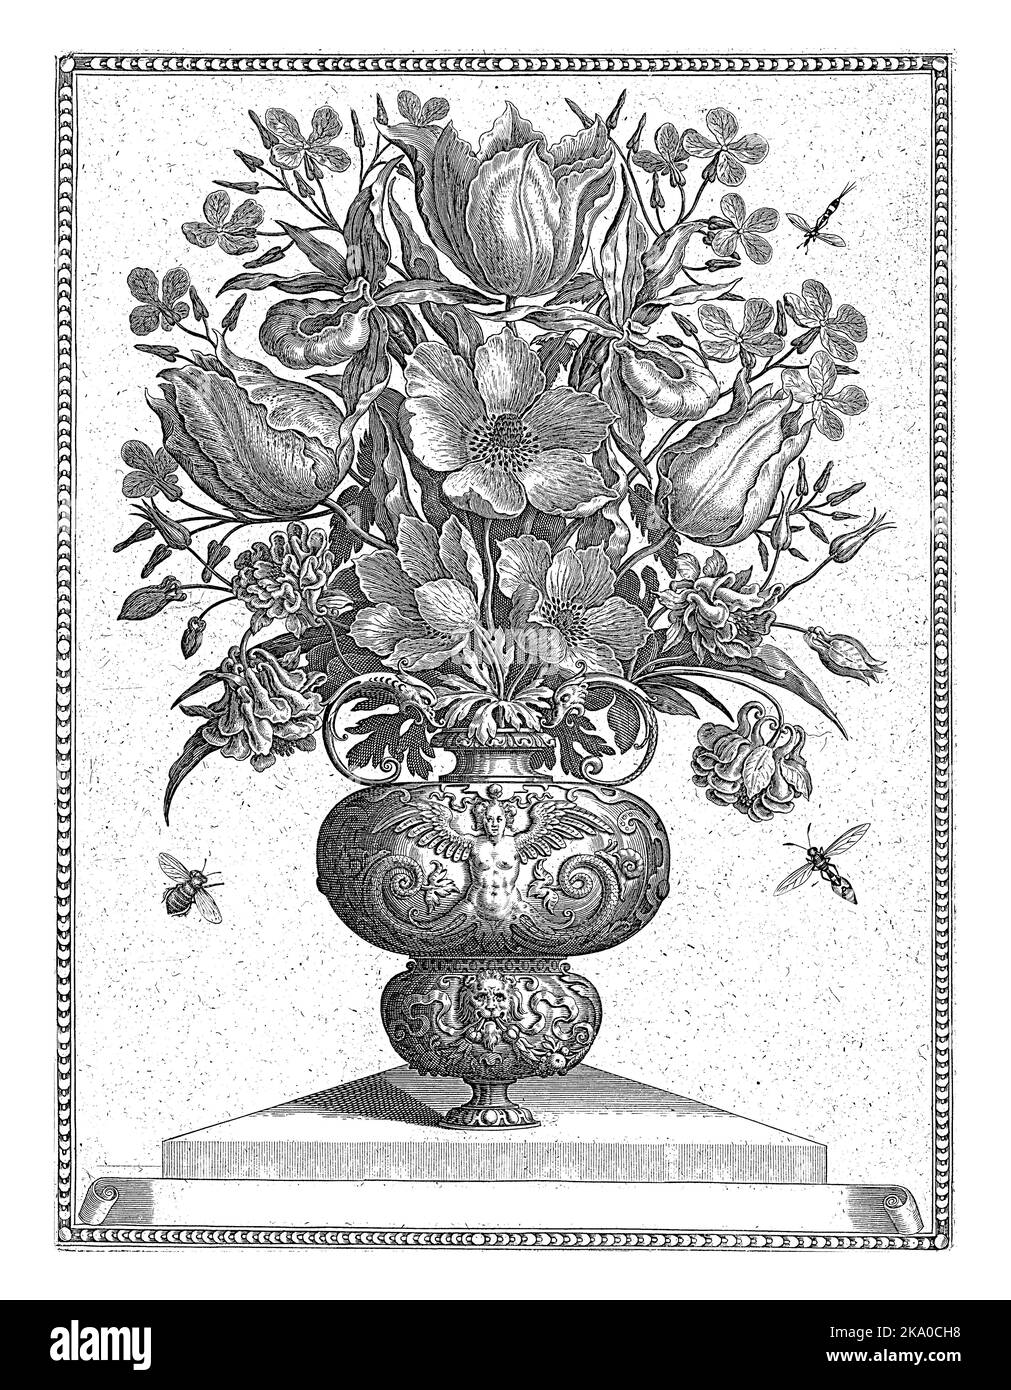 Dekorative Vase mit Blumen, die auf einem dreieckigen Sockel steht. Links eine Hummel, rechts oben und unten eine Biene. Stockfoto